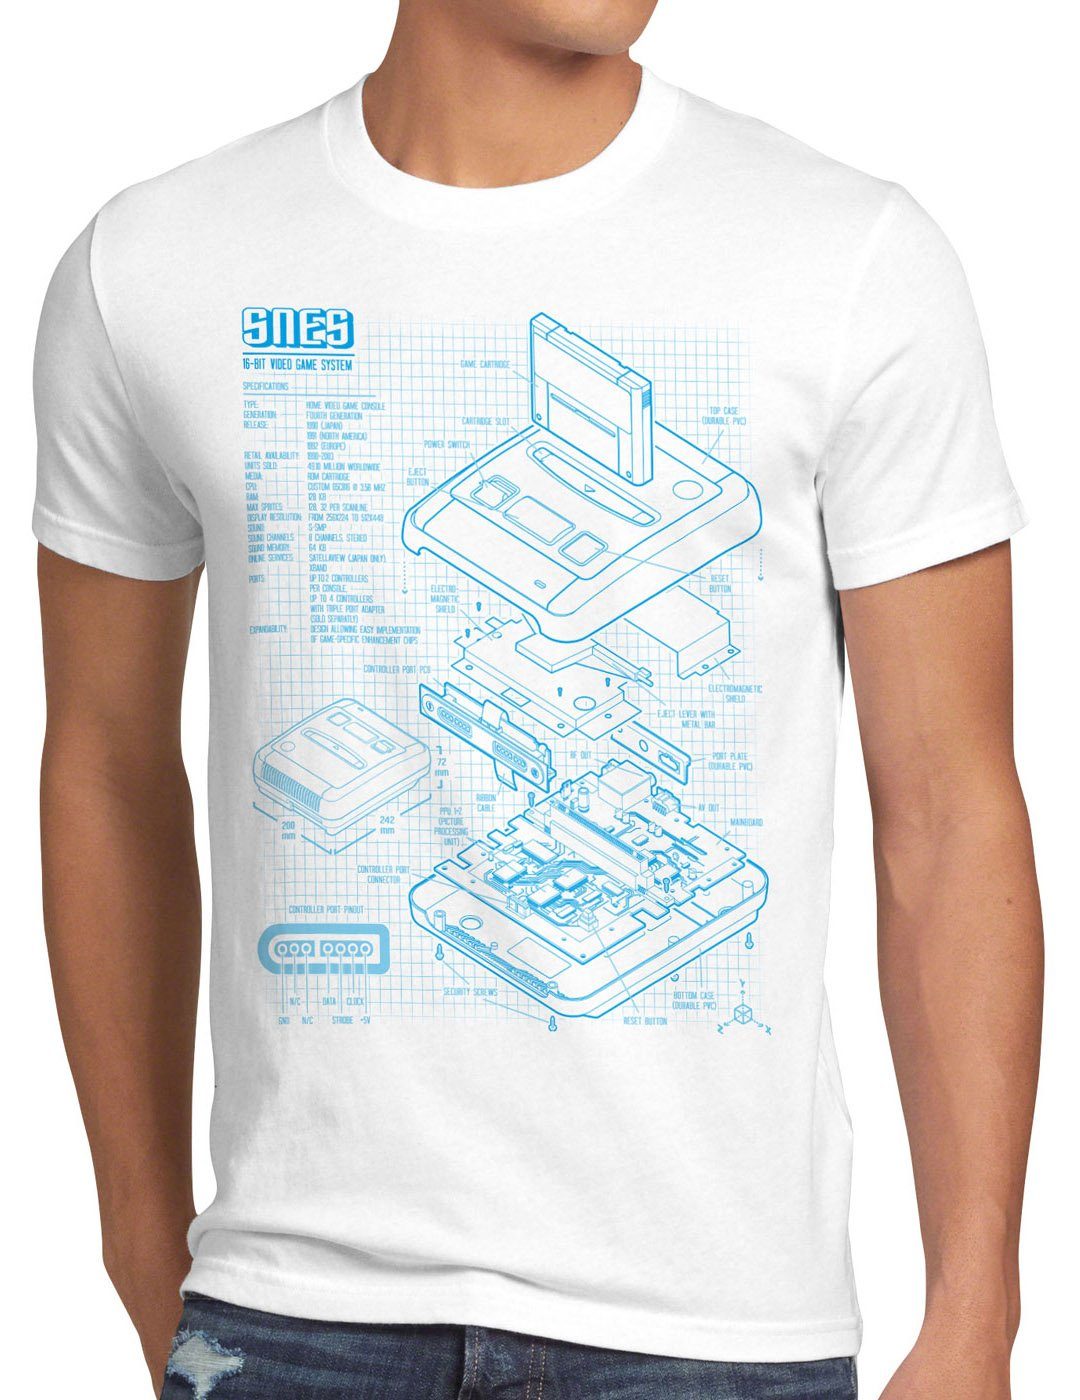 style3 Print-Shirt Herren T-Shirt SNES Blaupause 16-Bit Videospiel weiß